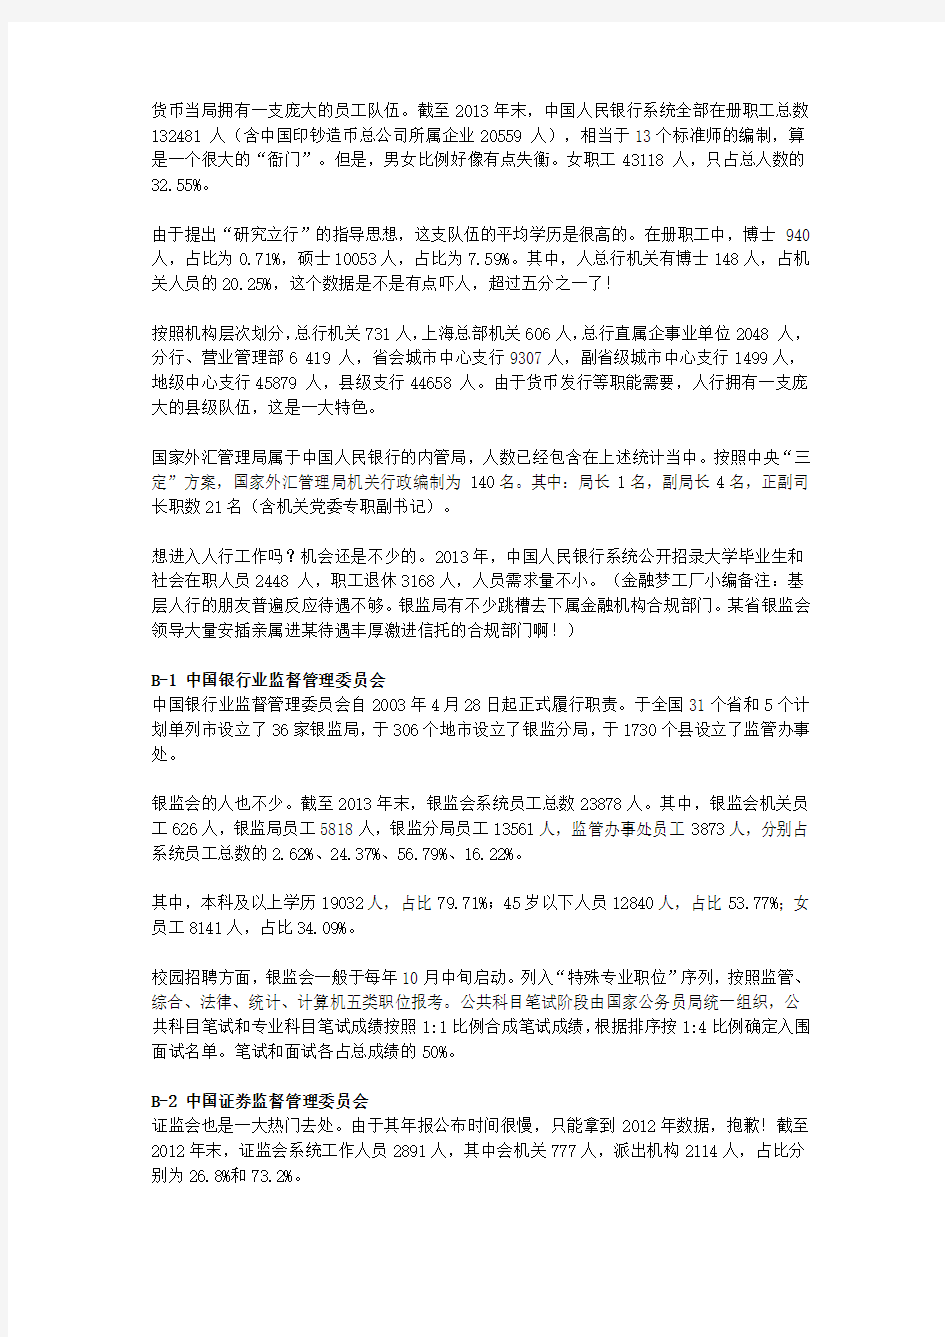 2014年最新中国金融机构简况